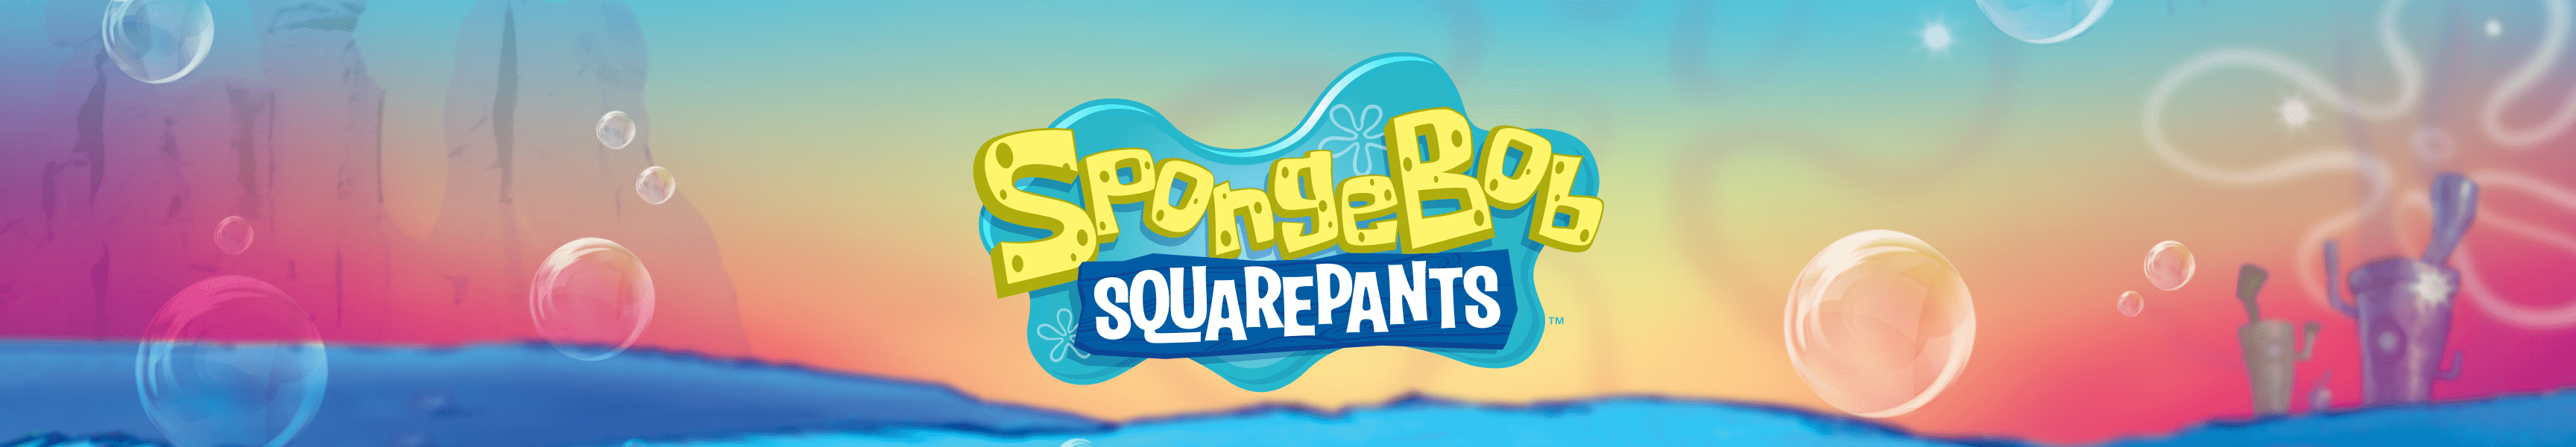 SpongeBob SquarePants Mugs